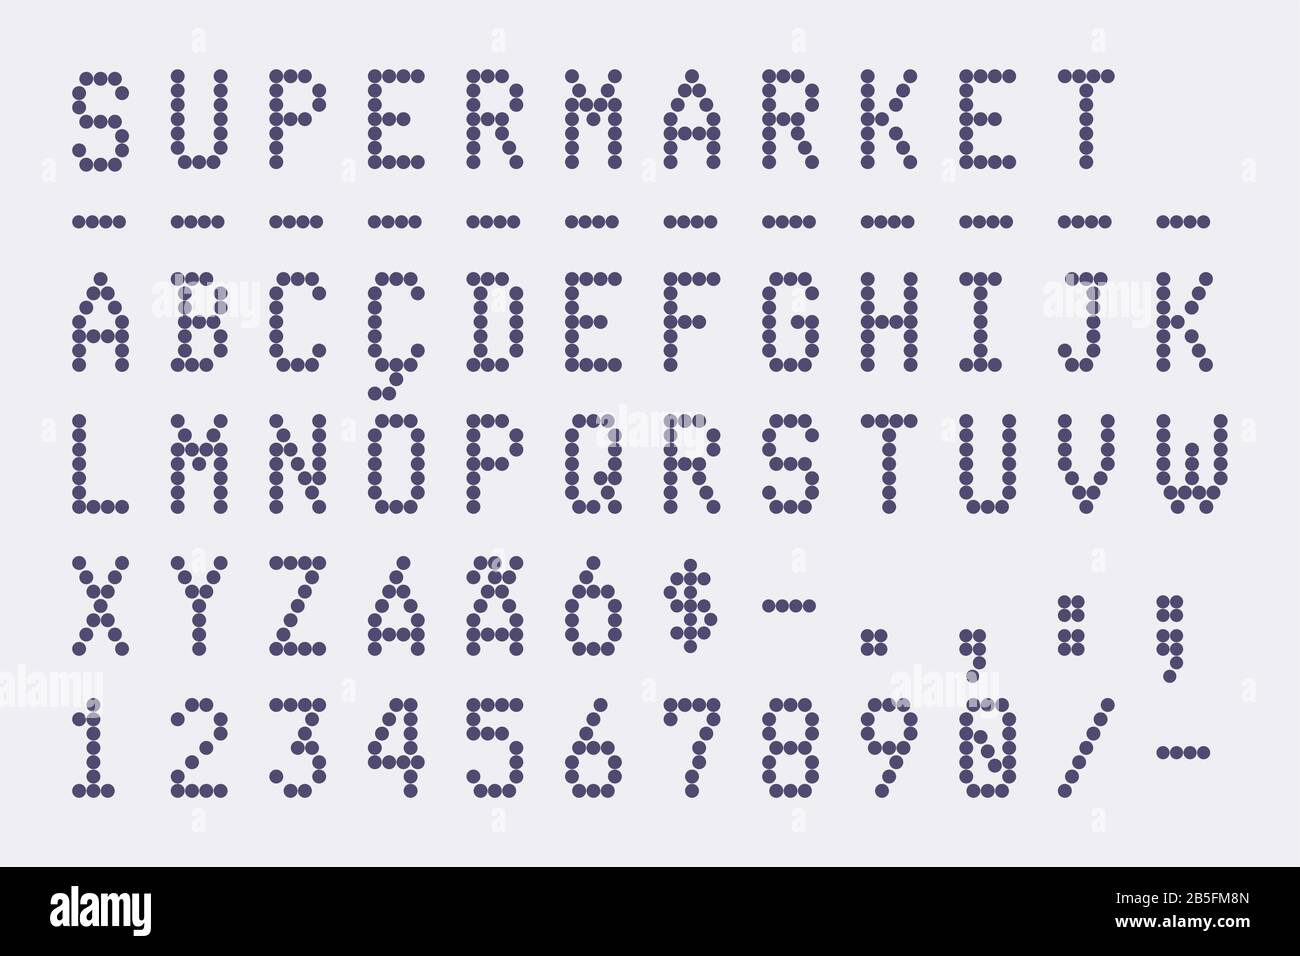 Police De Reçu De Supermarché Et De Banque (Facture D'Achat). Police De Typographie De Style Pixel (Point) (Vector Typeface). Lettres Majuscules Et Chiffres. Illustration de Vecteur